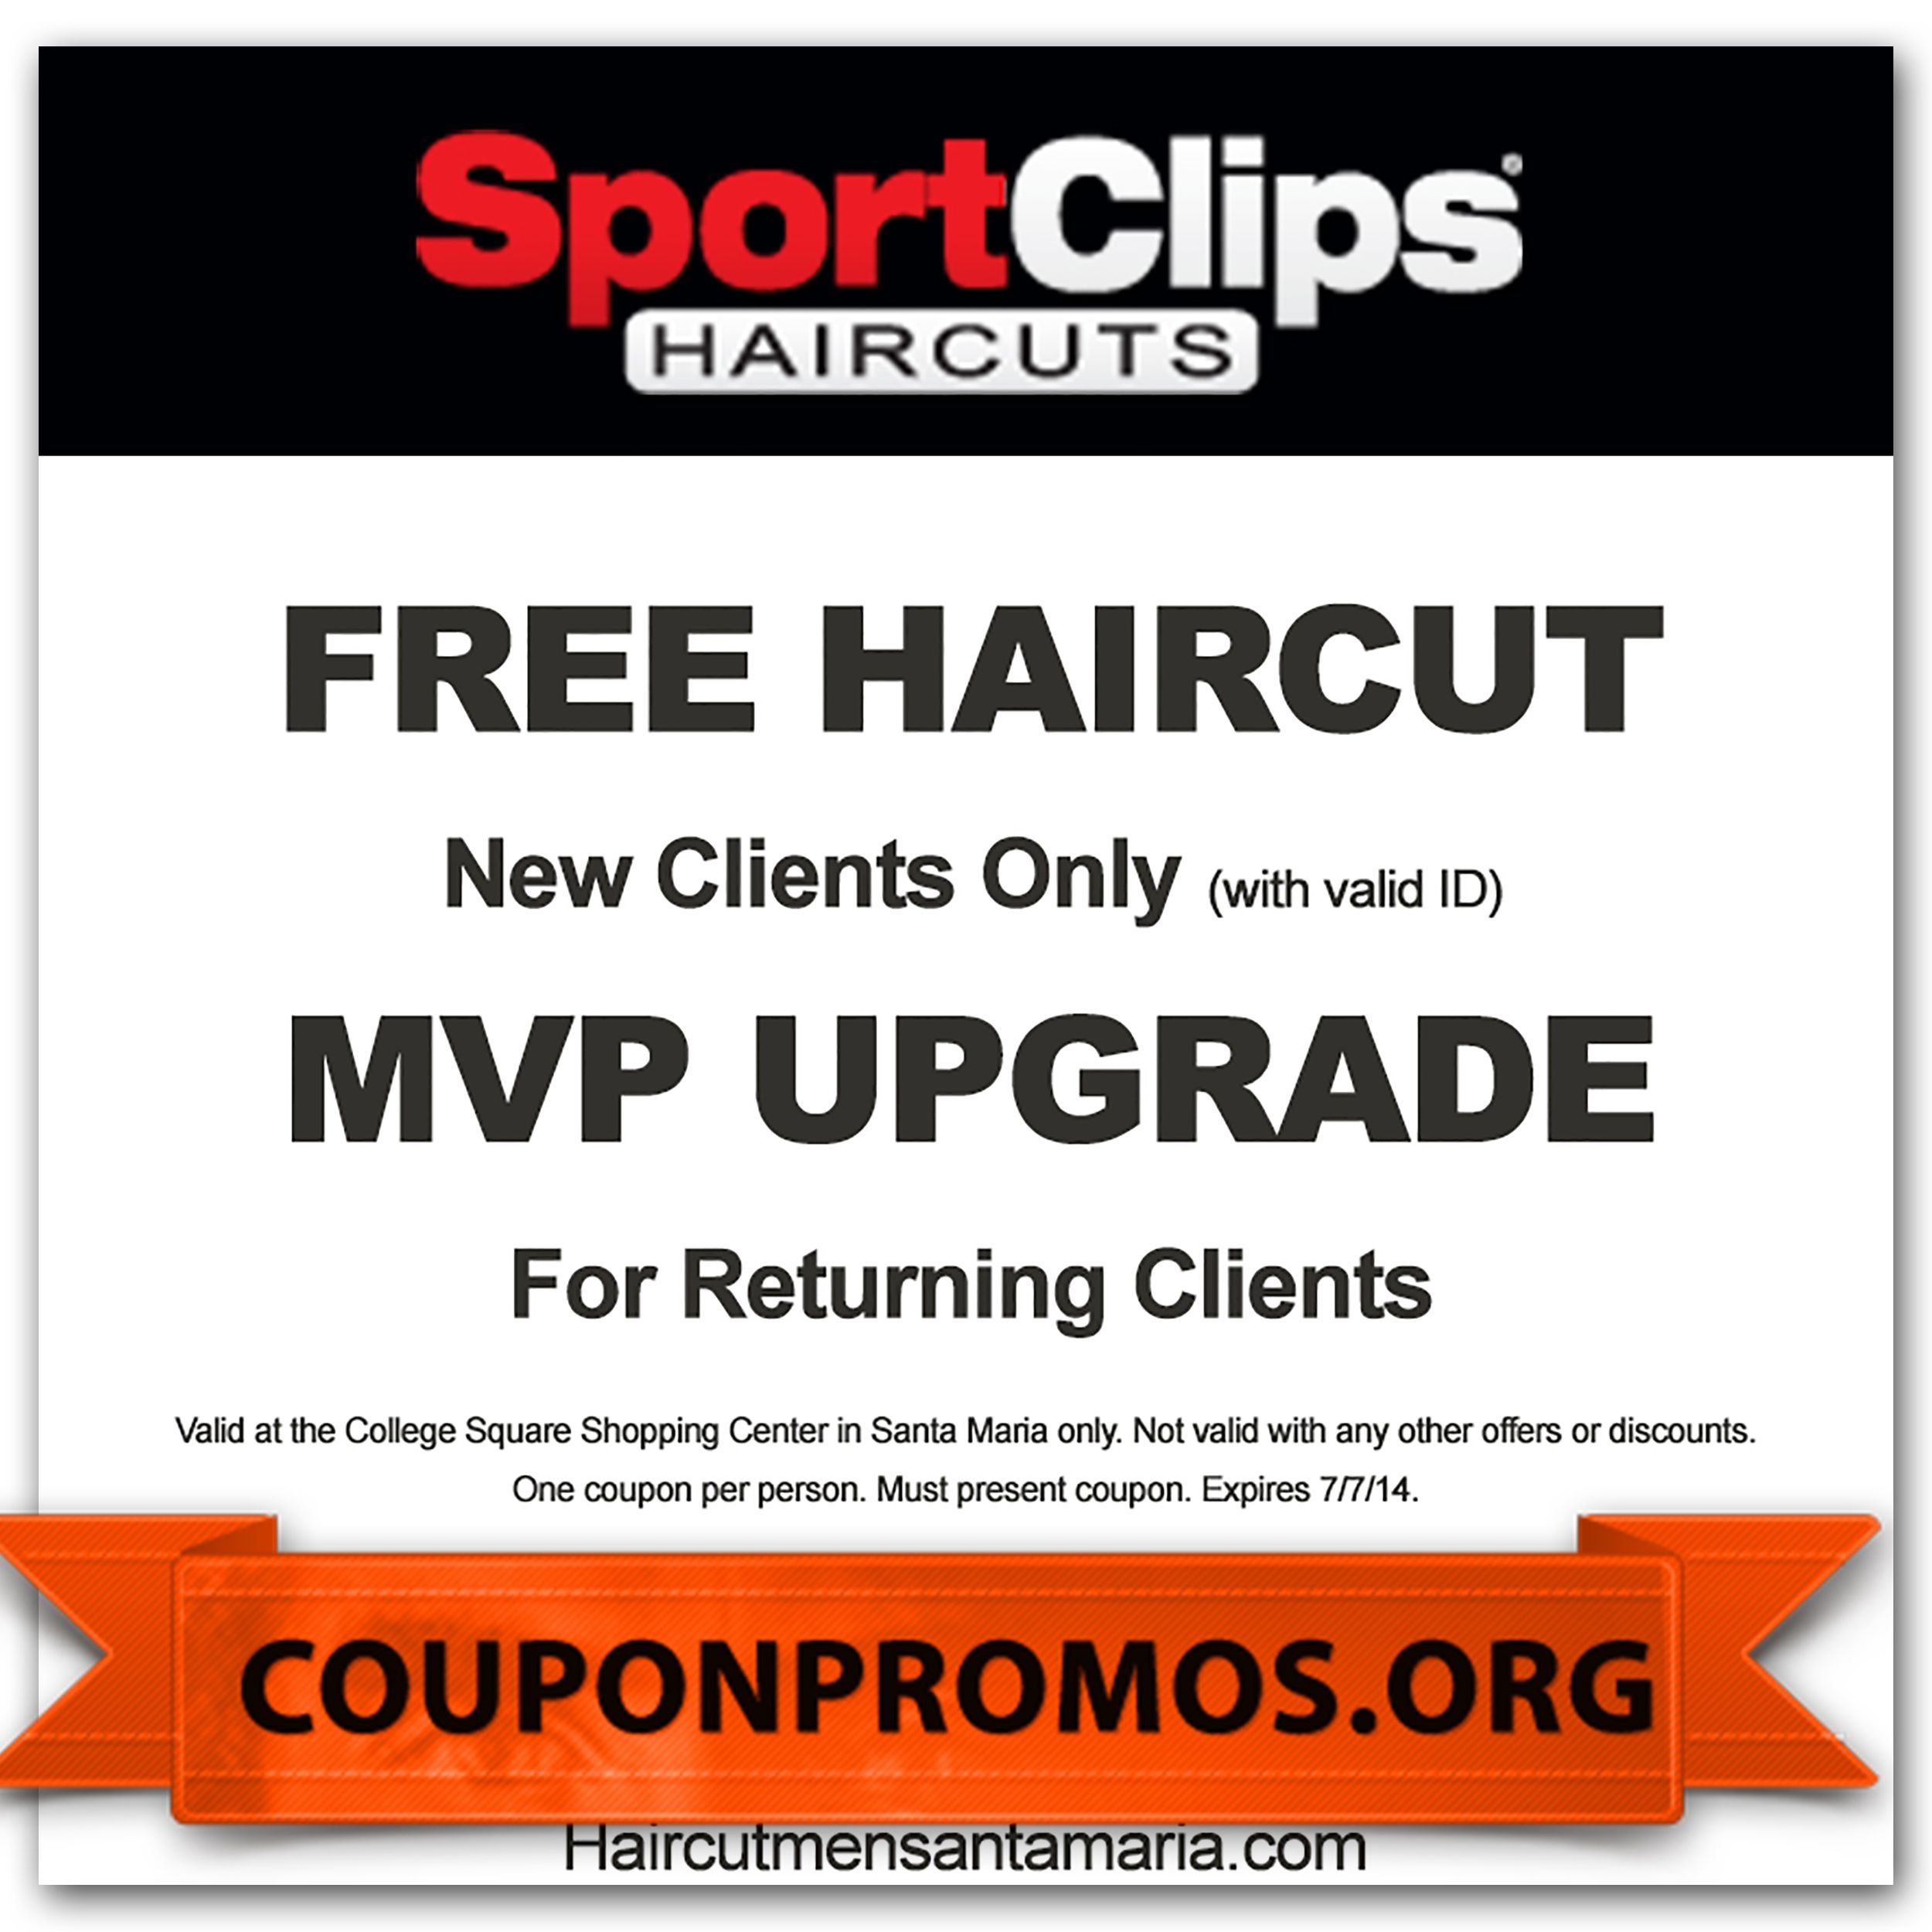 Sports Clips Free Haircut Printable Coupon Free Printable